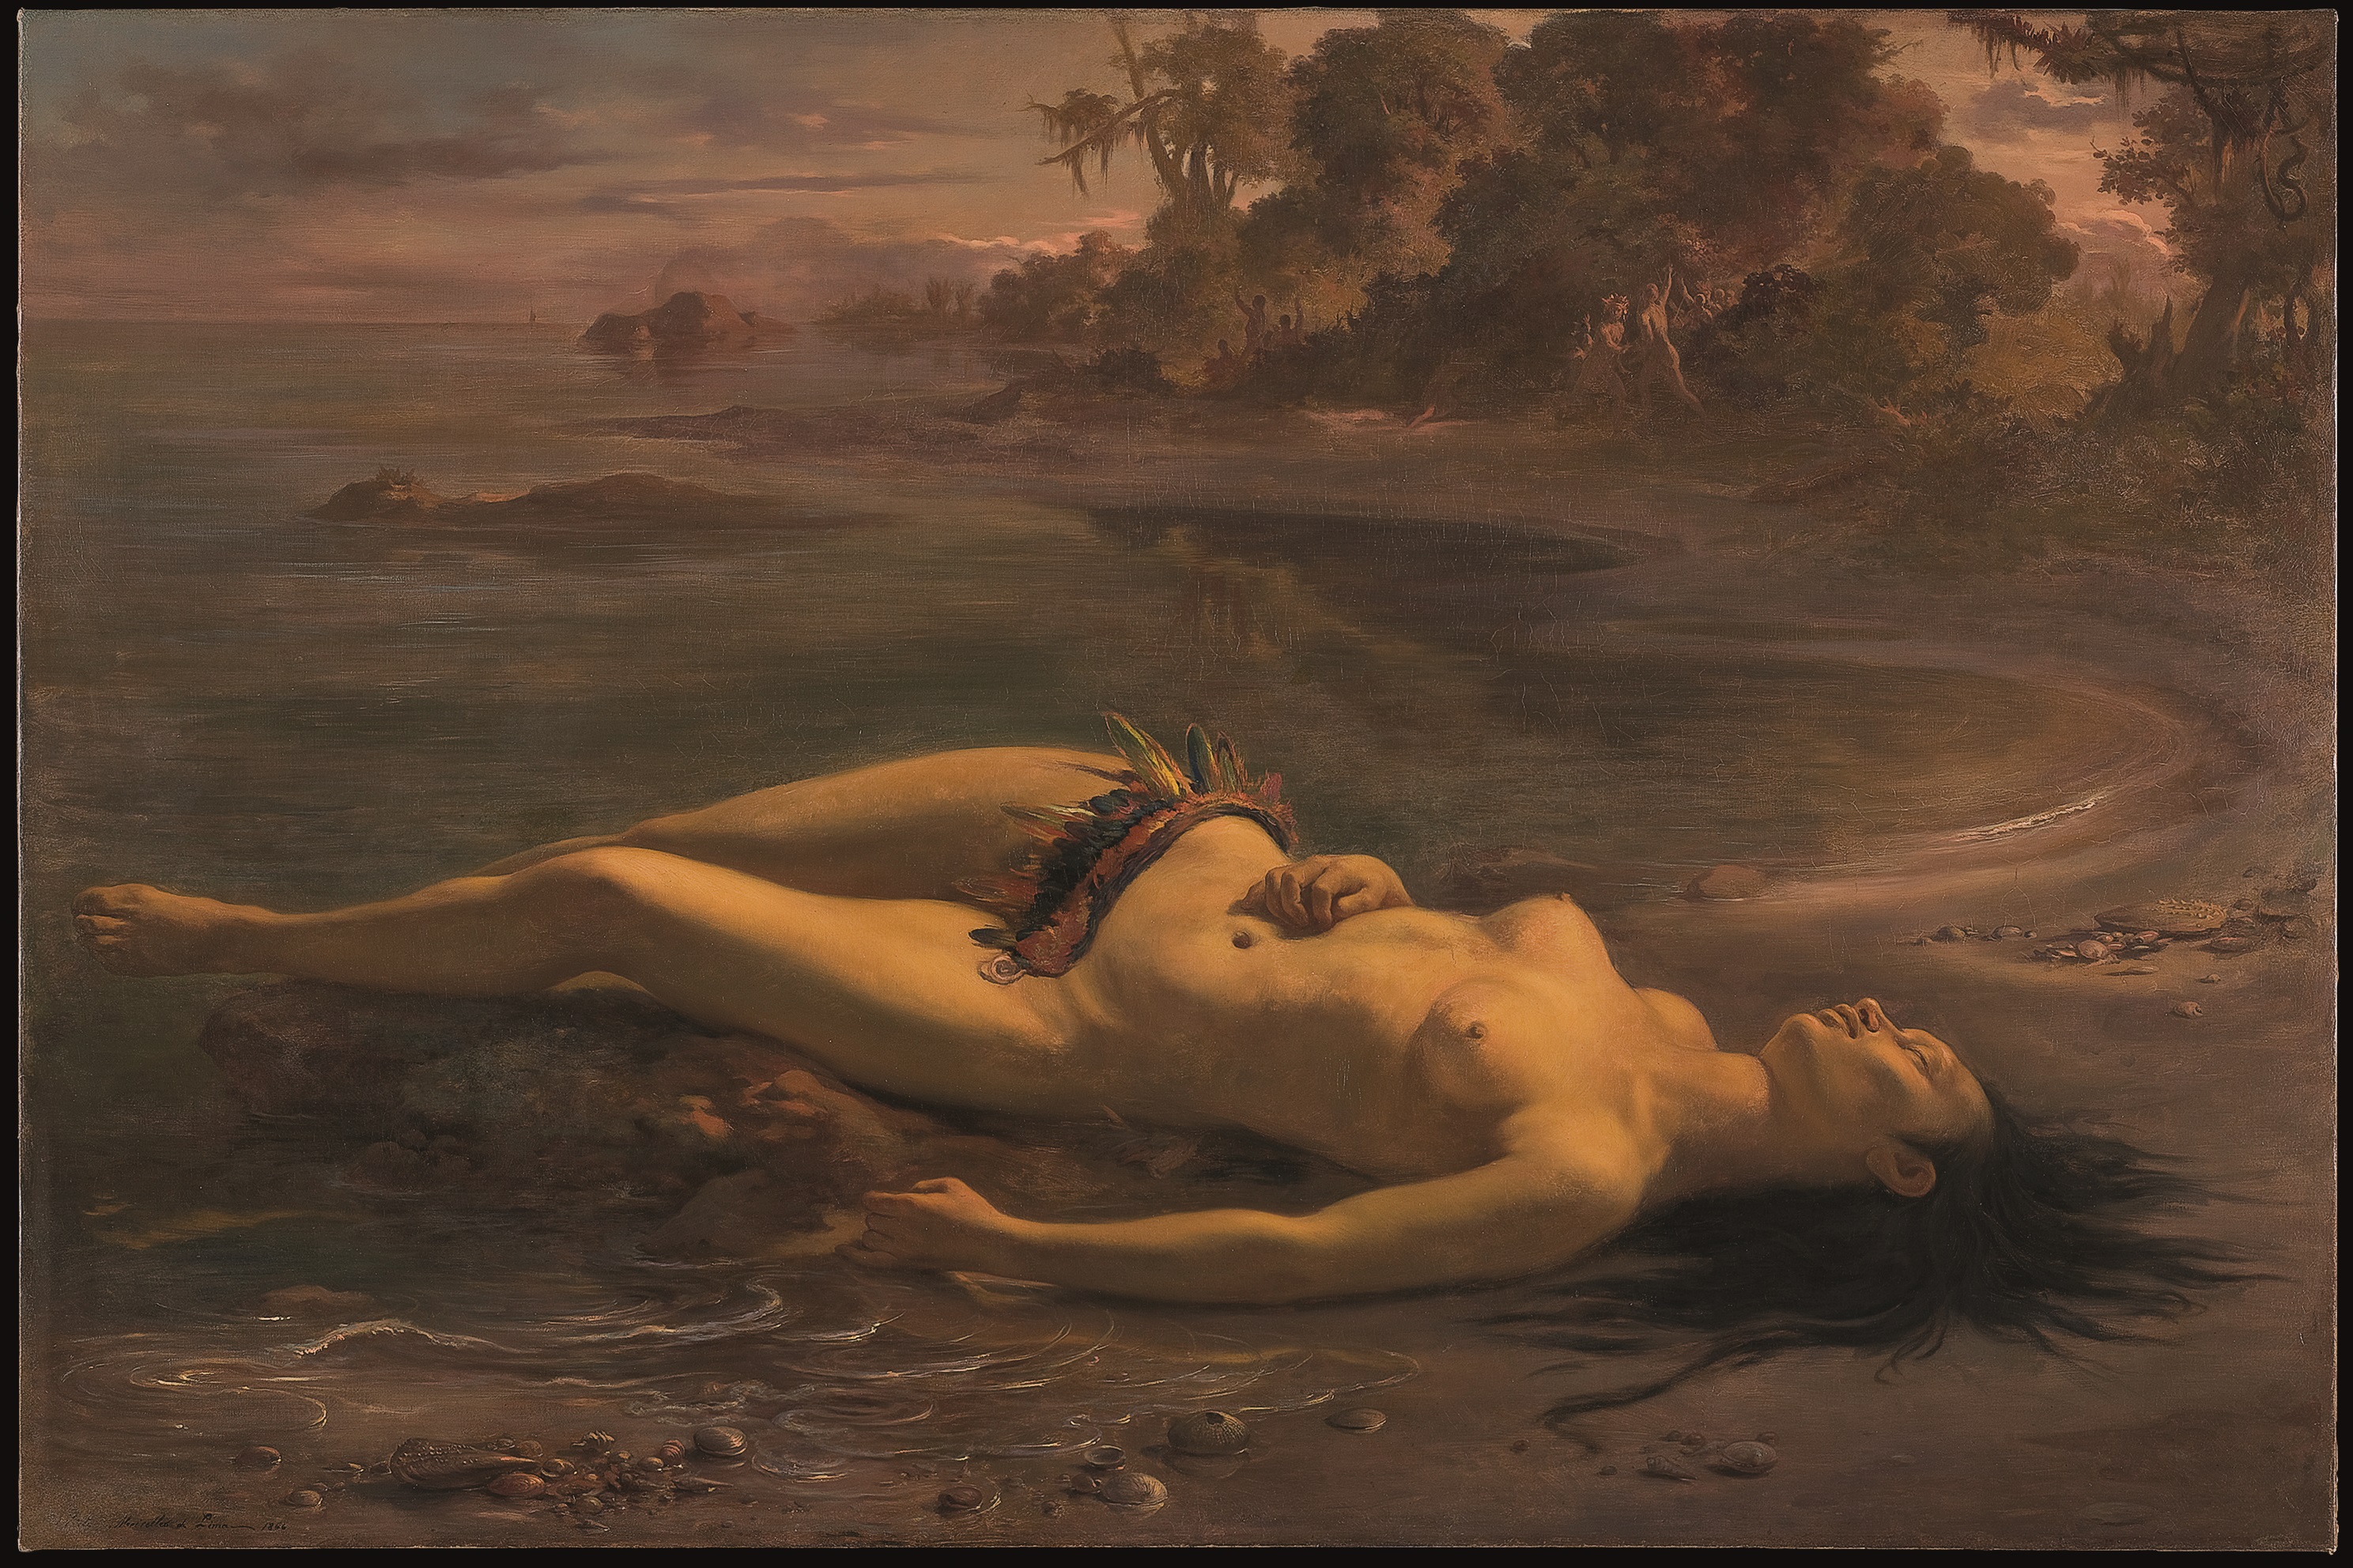 Moema by Victor Meirelles - 1866 - 129 x 199 cm 